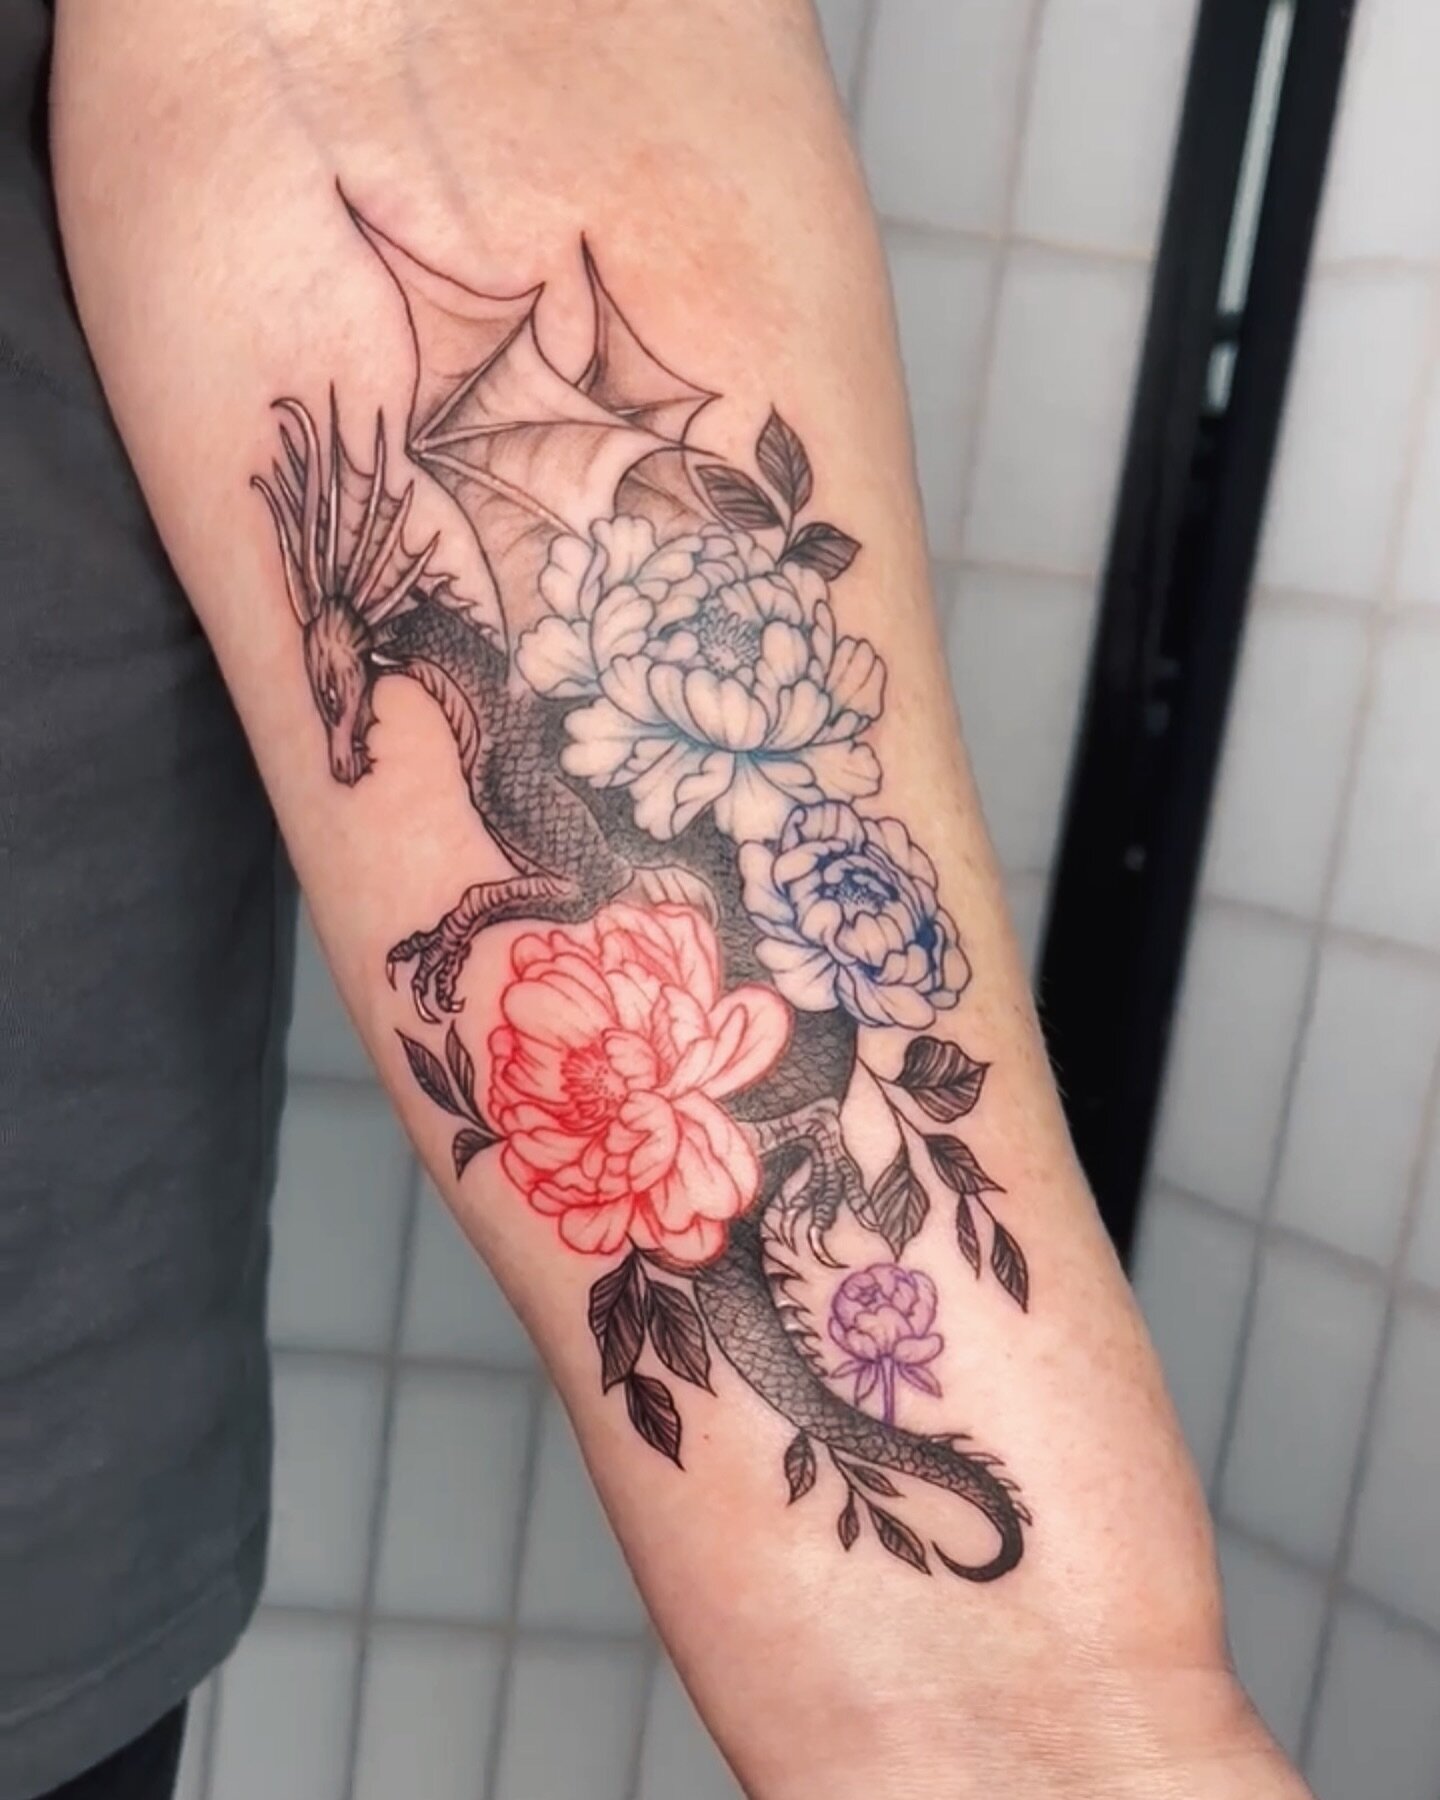 Dragon and floral piece done by Liv 🐉 | @54_tattoos 

#squiresink #goldcoast #2024 #surfersparadise #tattoo #tattooparlor #tattoostudio #ink #inked @pirattattoo #pirattattoomachine #tattooartist #inkart #inkdrawing #skills #tattooideas #drpickles #t